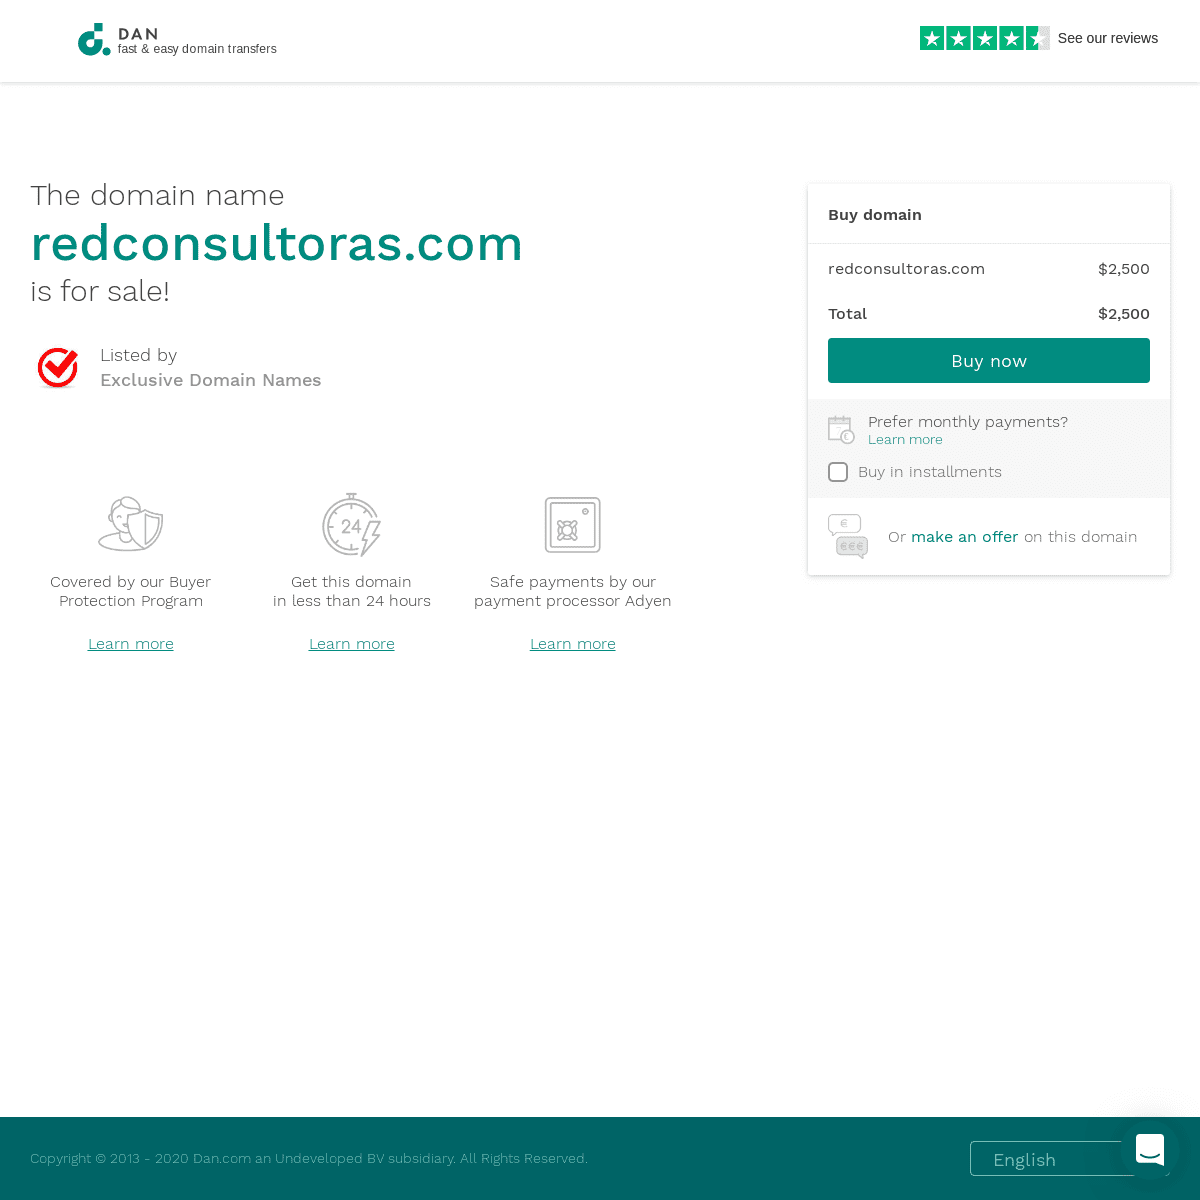 A complete backup of redconsultoras.com